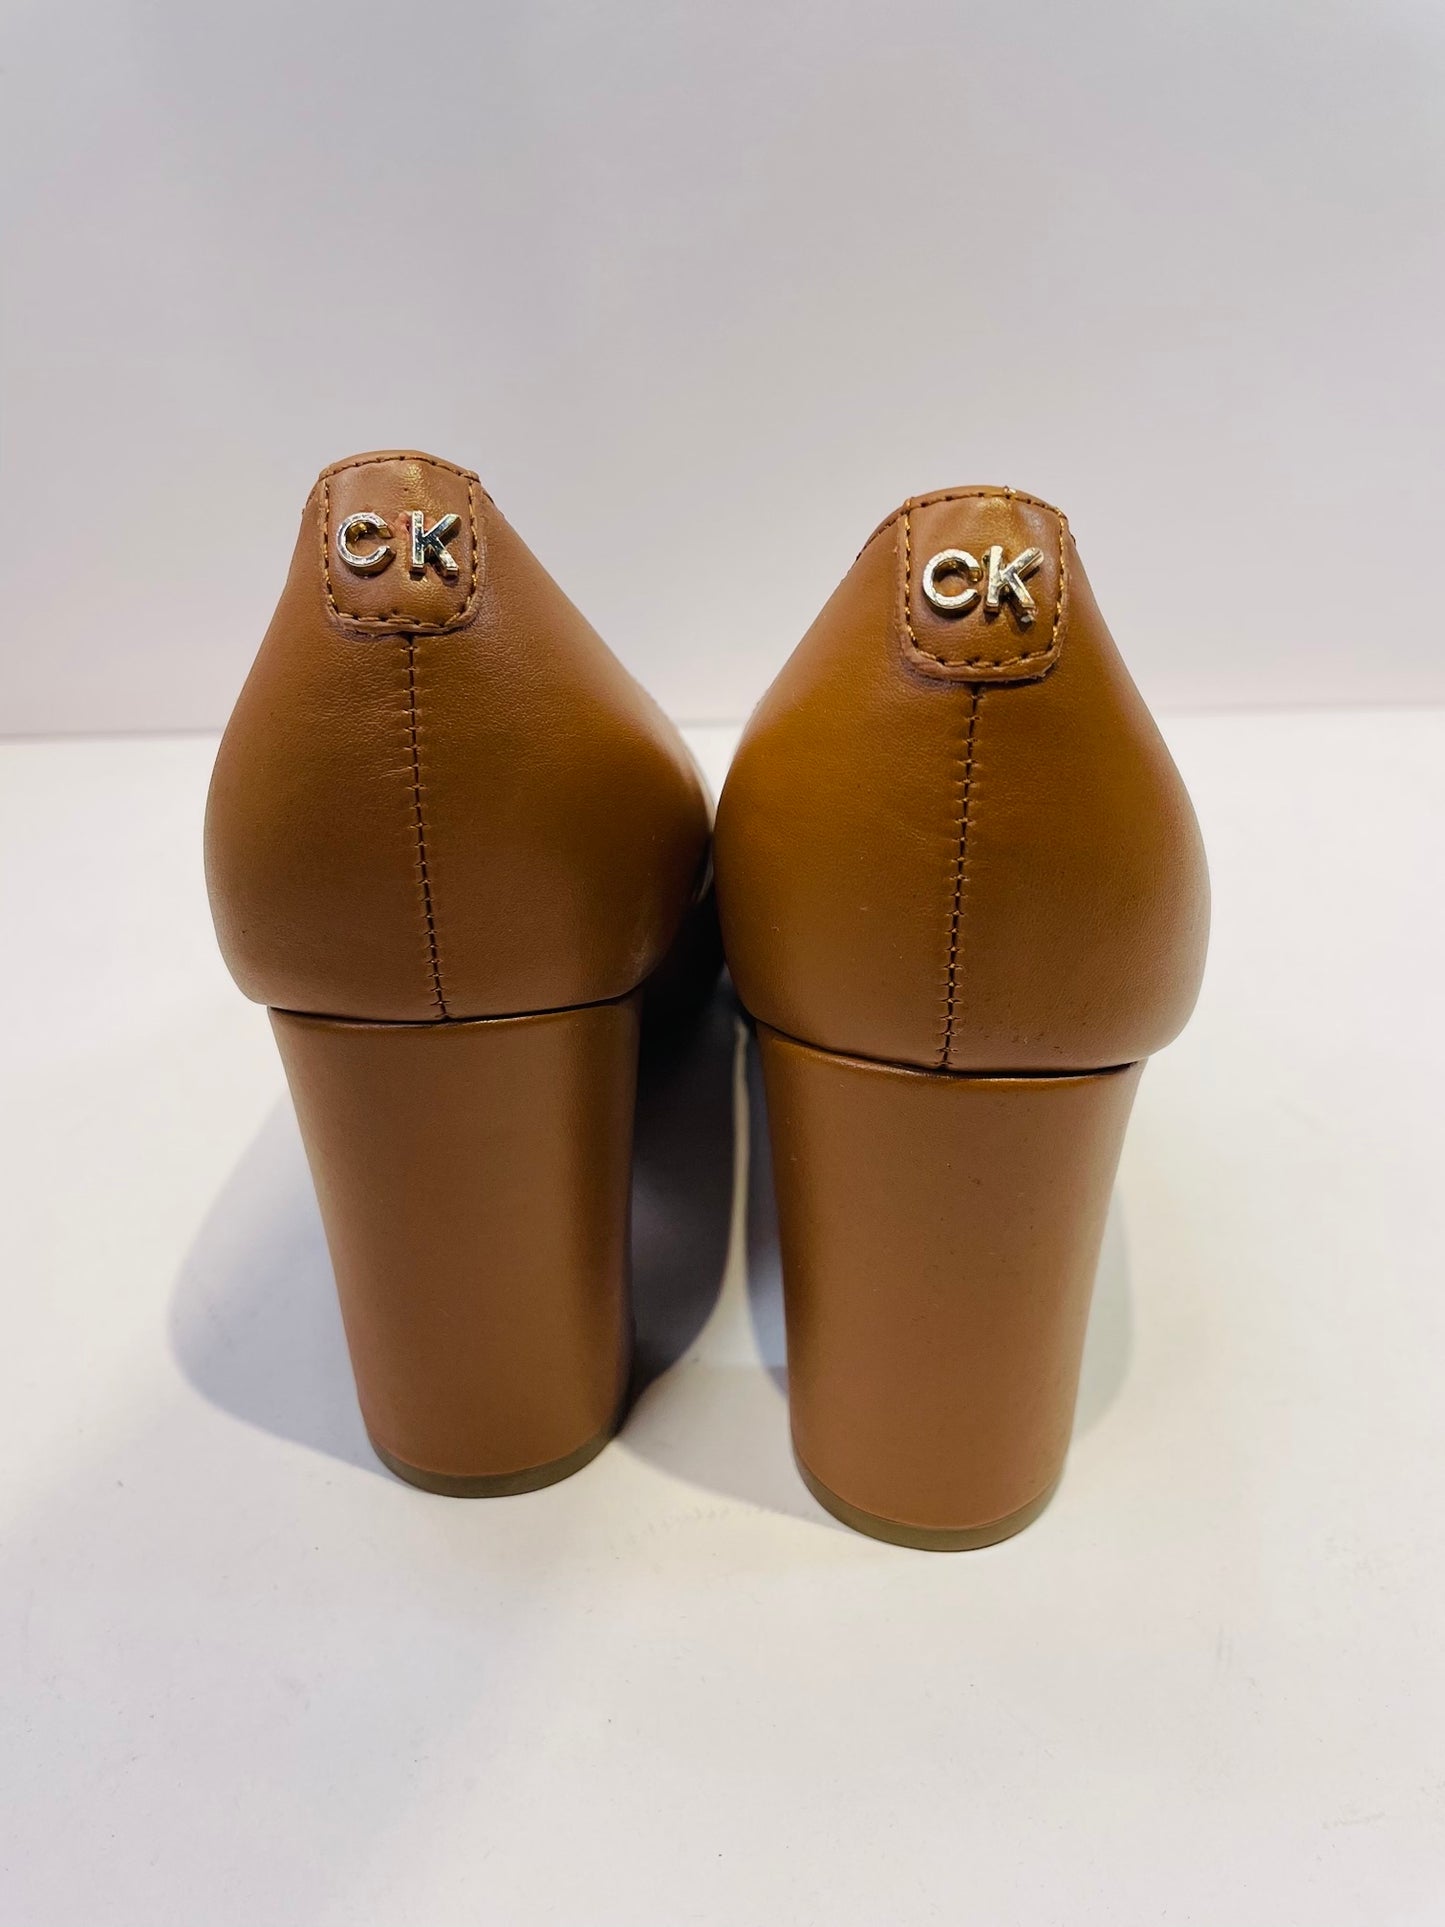 Calvin Klein heels shoes